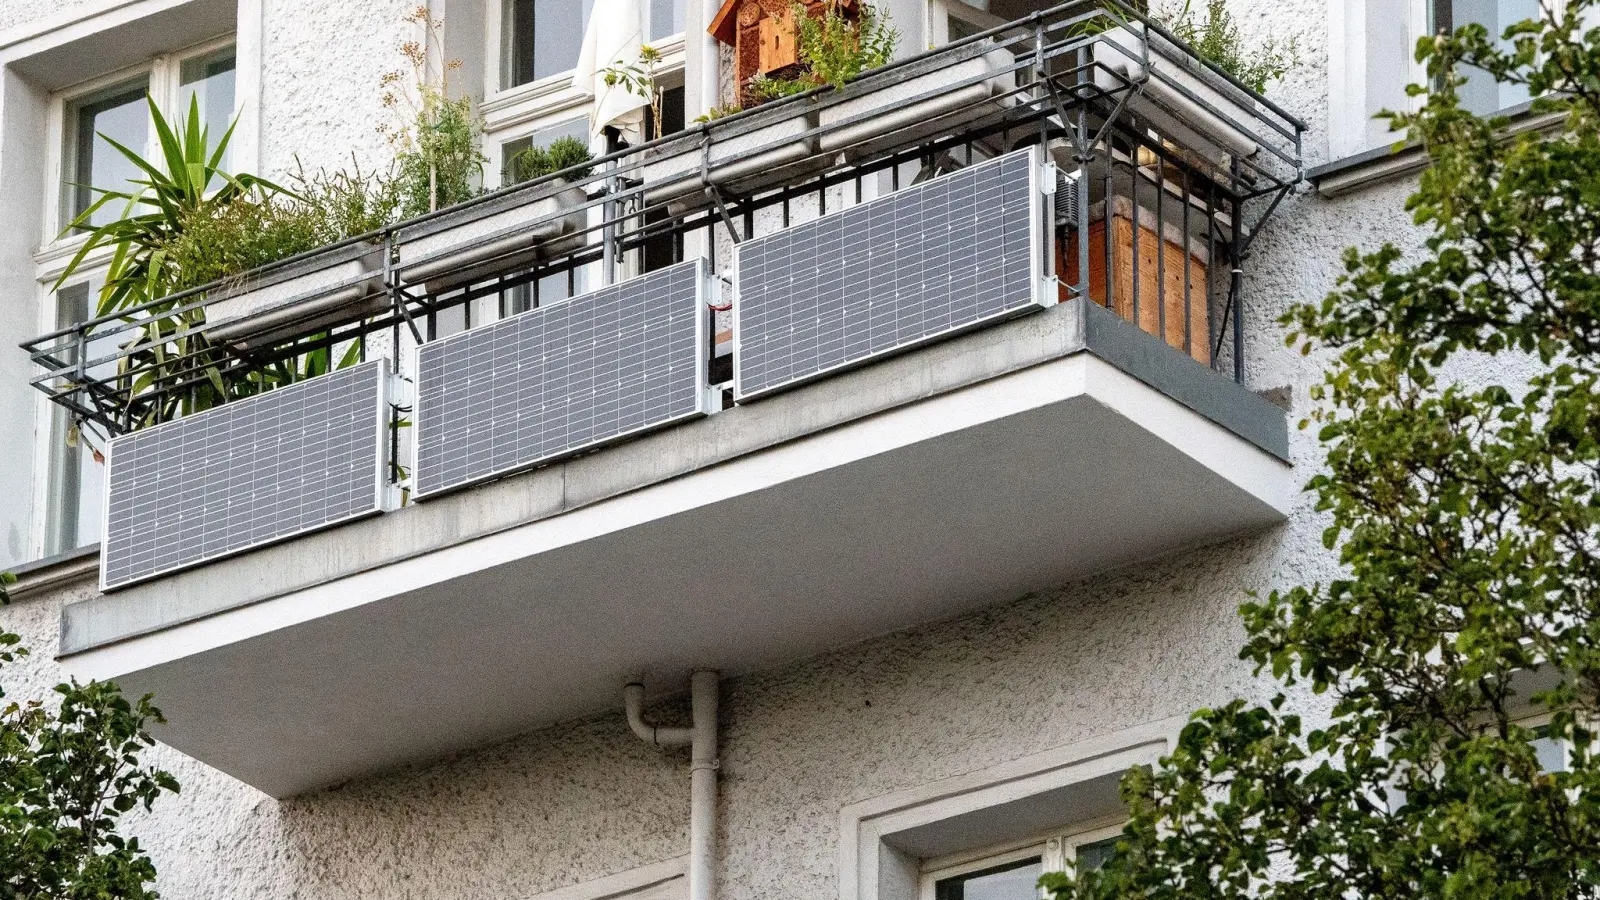 Praktische Sache: eine Photovoltaik-Anlage am Balkon. Damit der Strom fließen kann, ist ein Wechselrichter nötig - der sollte aber zuverlässig und sicher sein. (Foto: Bernd Diekjobst/dpa-tmn)